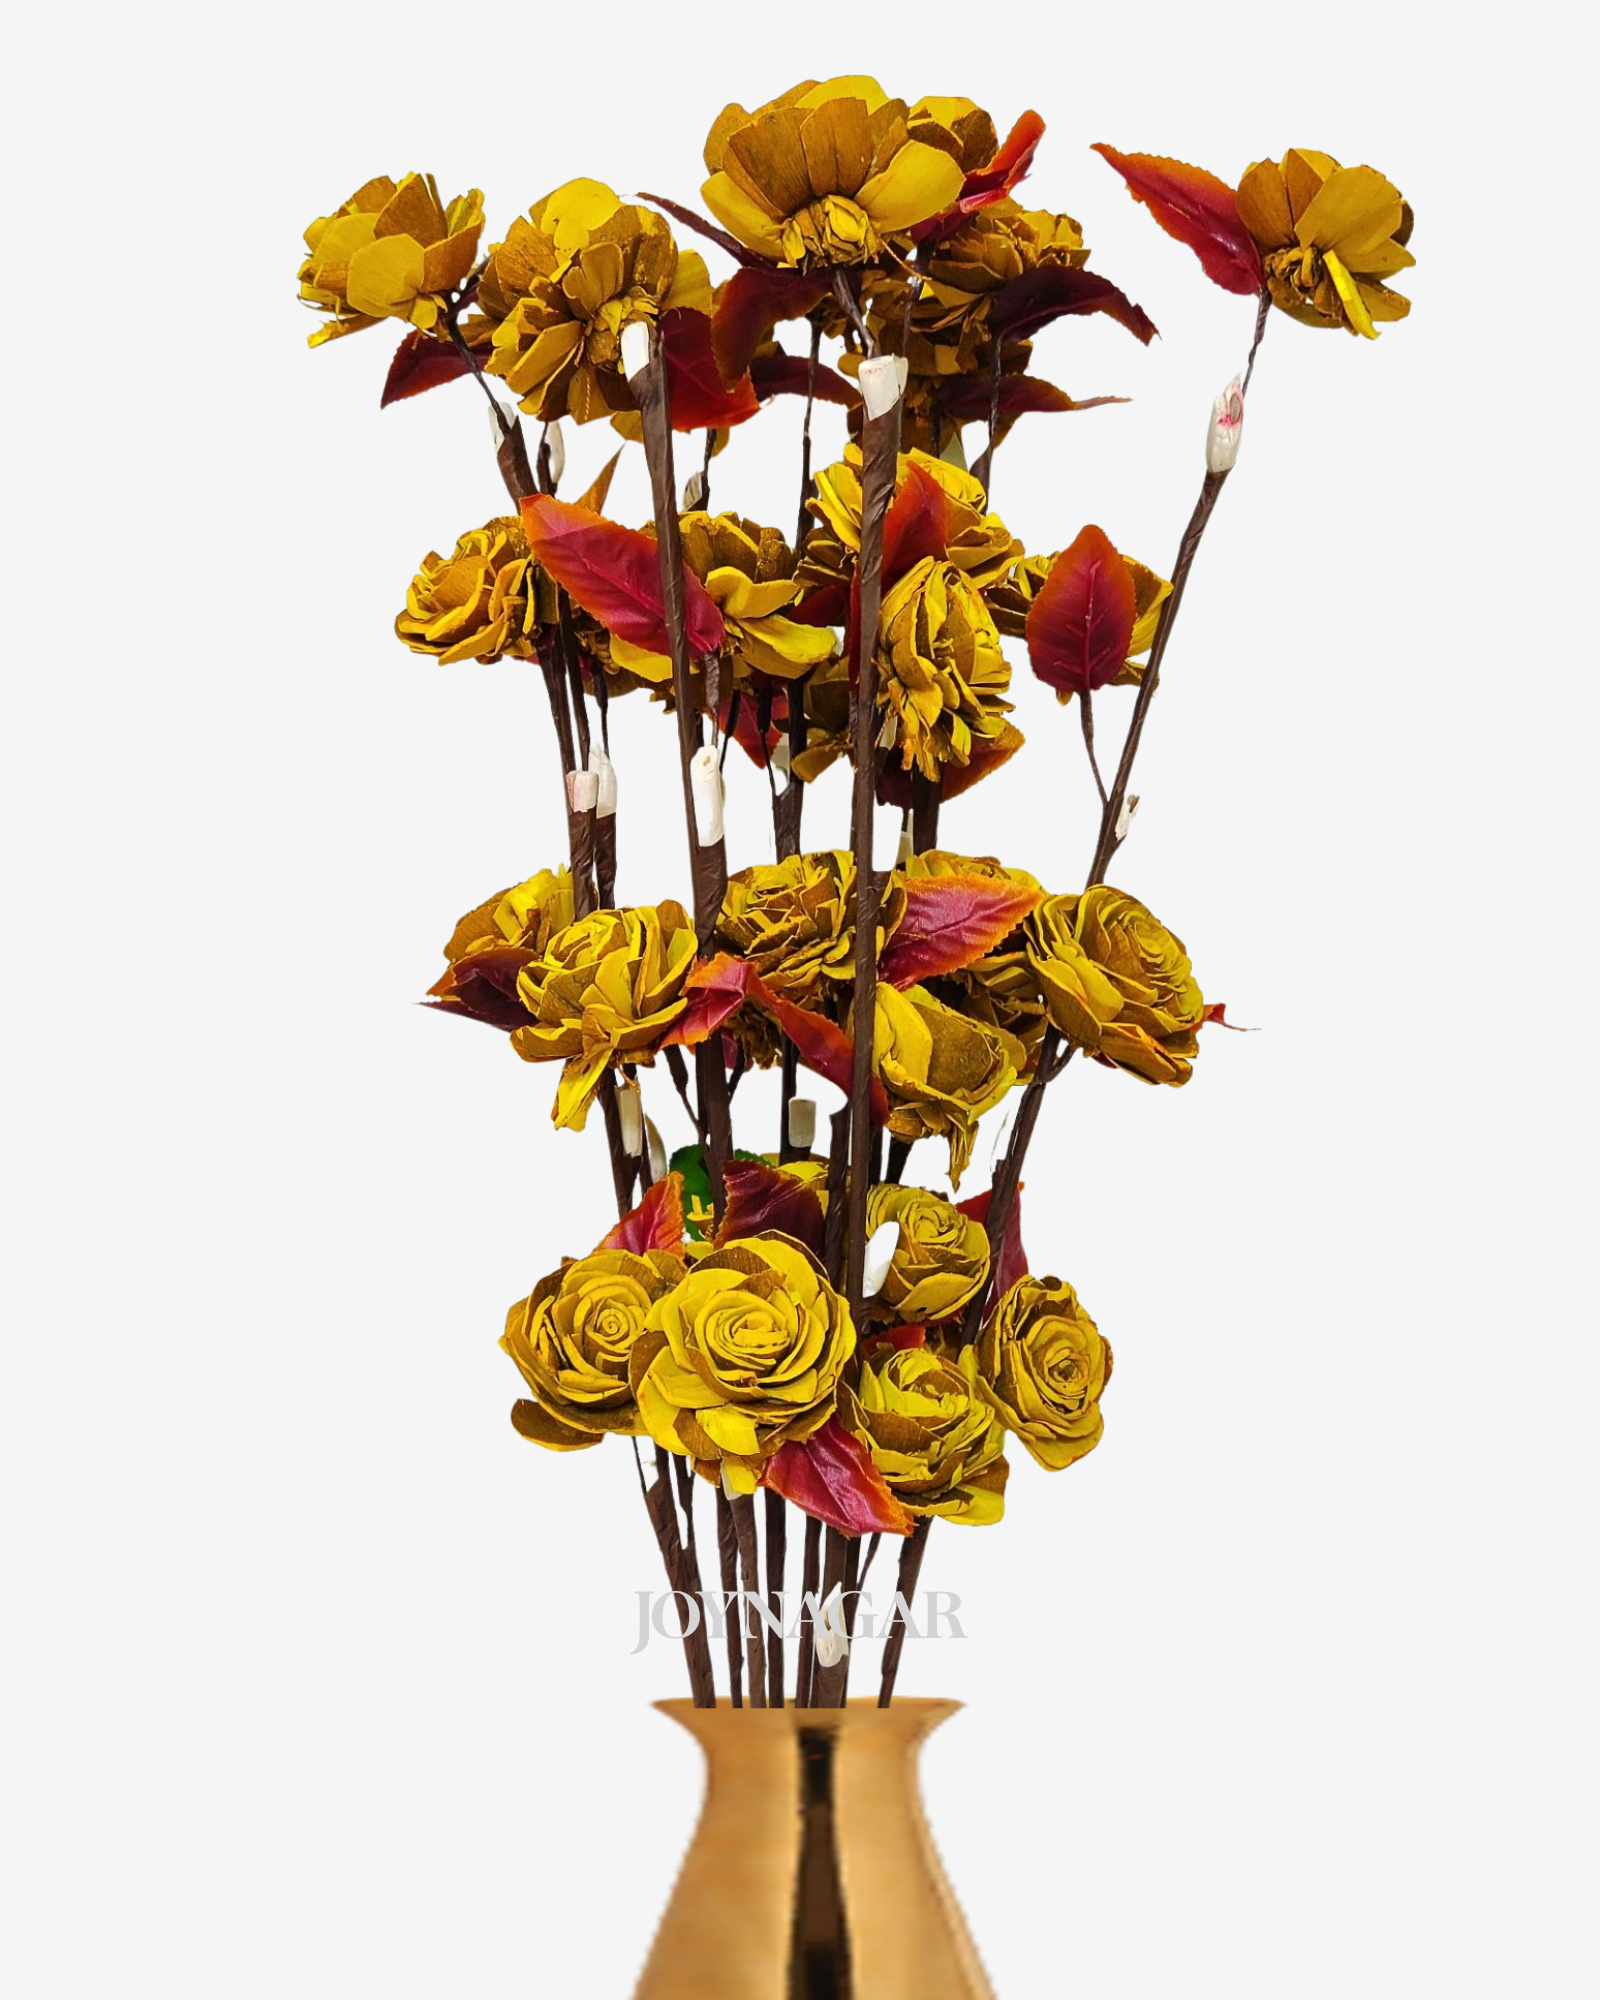 Sola Beauty Rose Flower Stick Joynagar Handicraft Artificial Flowers color_yellow